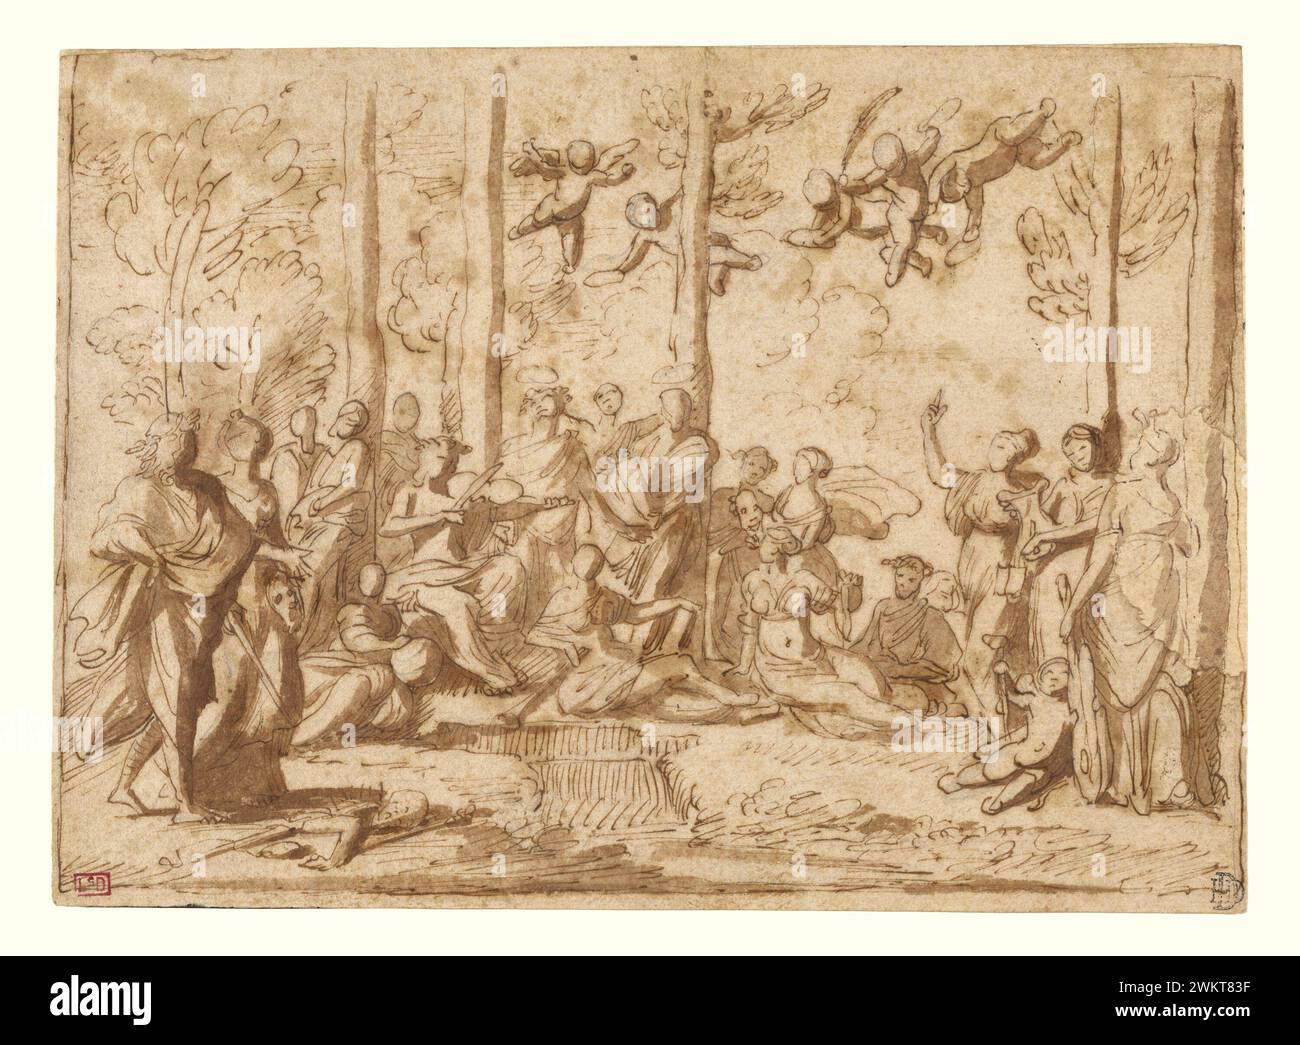 Apollo und die Musen auf dem Parnassus; Nicolas Poussin (Französisch, 1594 - 1665); Frankreich; ca. 1626 - 1628 oder 1631; Stift und braune Tinte, Pinsel mit brauner Waschung; kleiner, unregelmäßiger Abschnitt am rechten Rand hinzugefügt; 17,6 x 24,6 cm (6 15/16 x 9 11/16 Zoll); 83.GG.345 Stockfoto